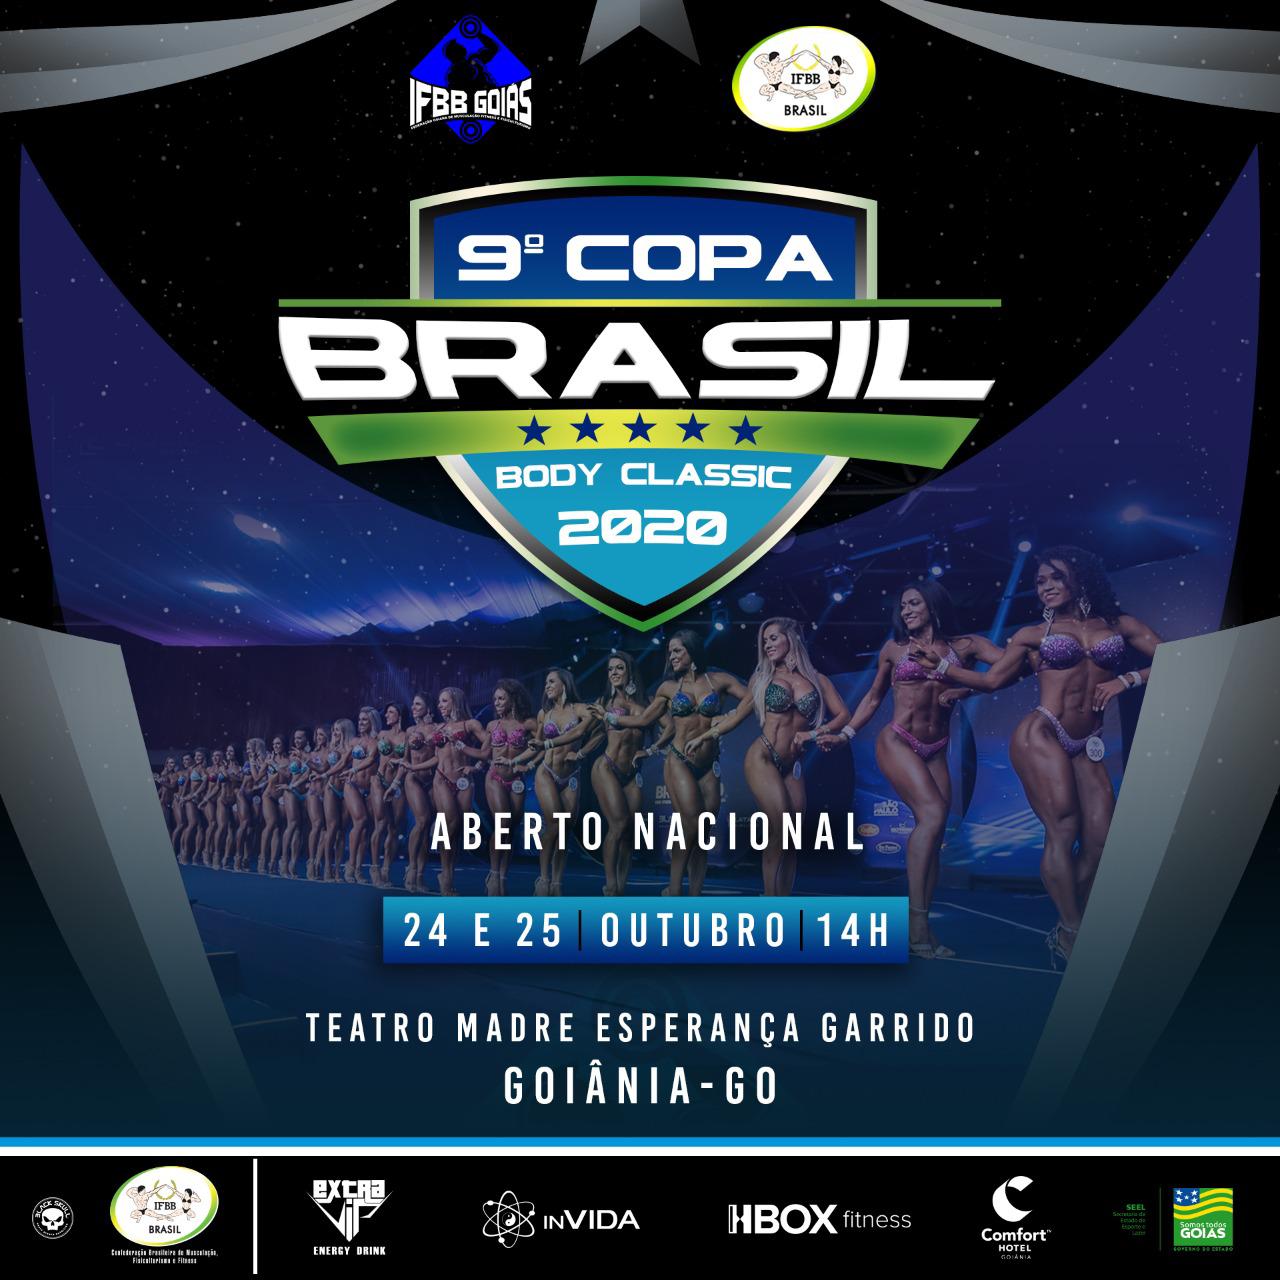 9ª Copa Brasil Body Classic 2020